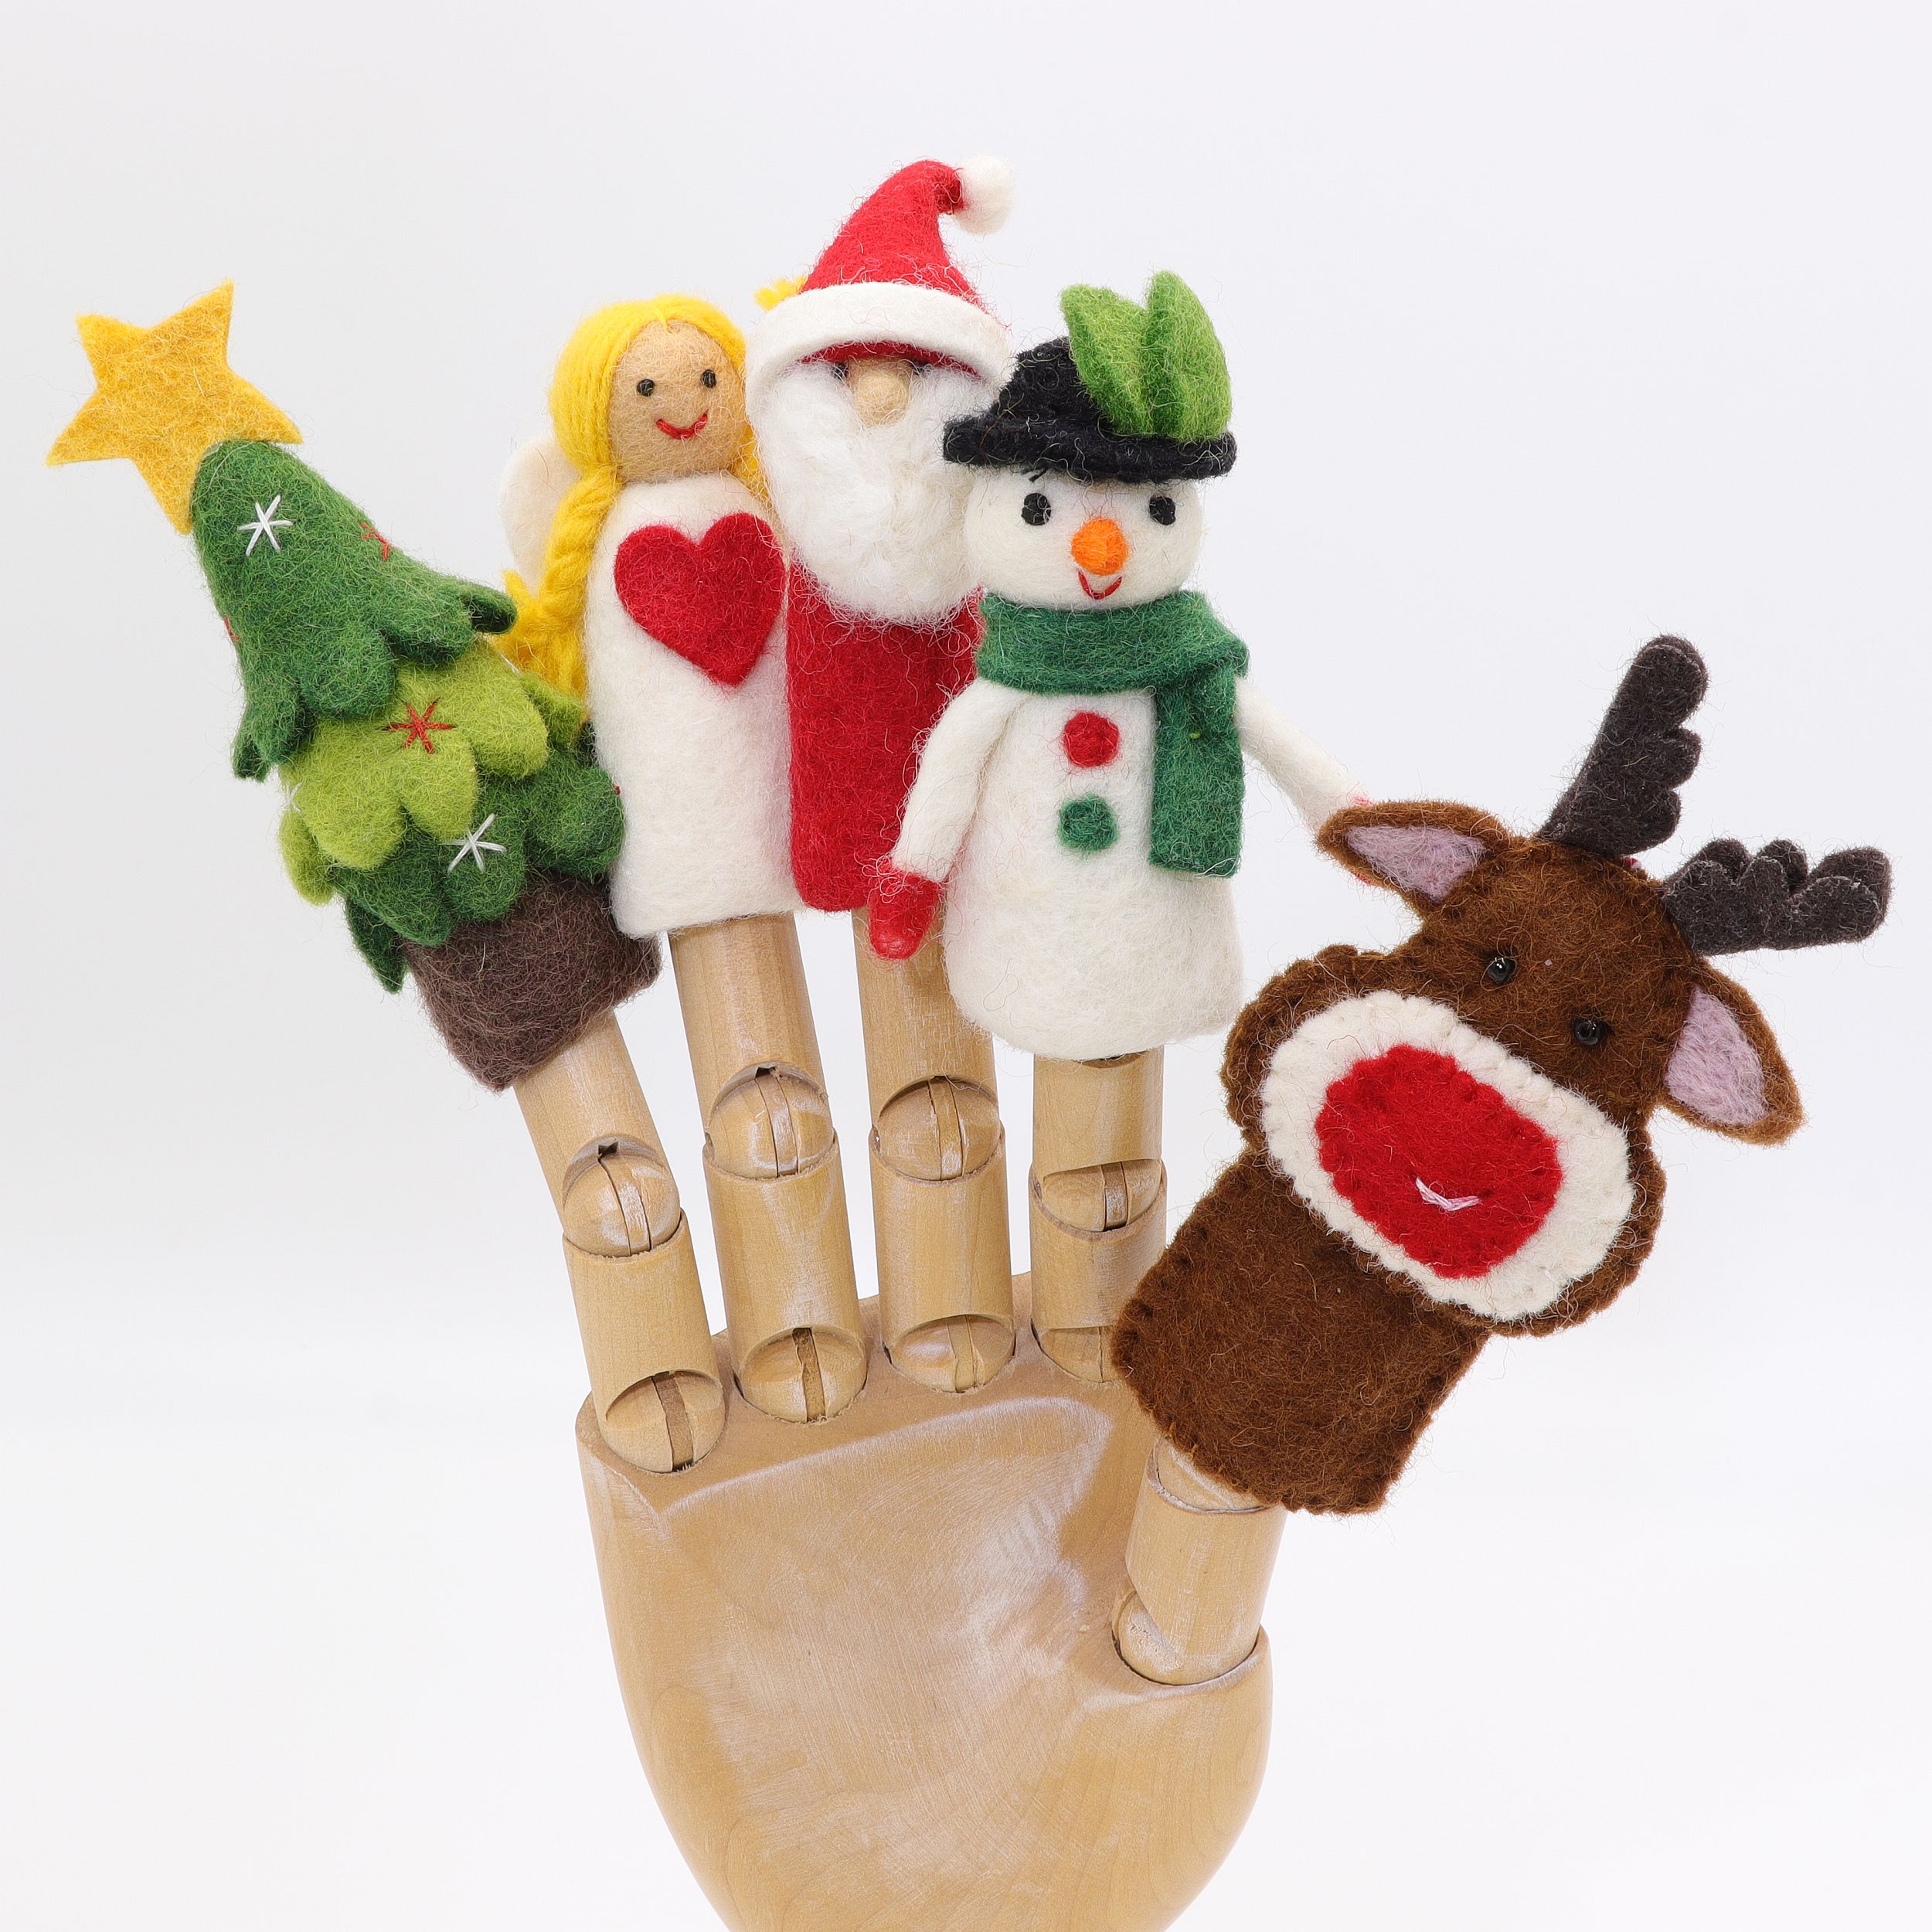 Xmas Set - Weihnachtsmann - Fünf Fingerpuppen aus Filz - 100% Wolle - Filzfiguren und Filztiere zum Spielen, Lernen, Fördern, Sammeln - tolle Überraschung für Klein und Groß - echte Handarbeit mit viel Liebe zum Detail - fair gehandelt aus Nepal